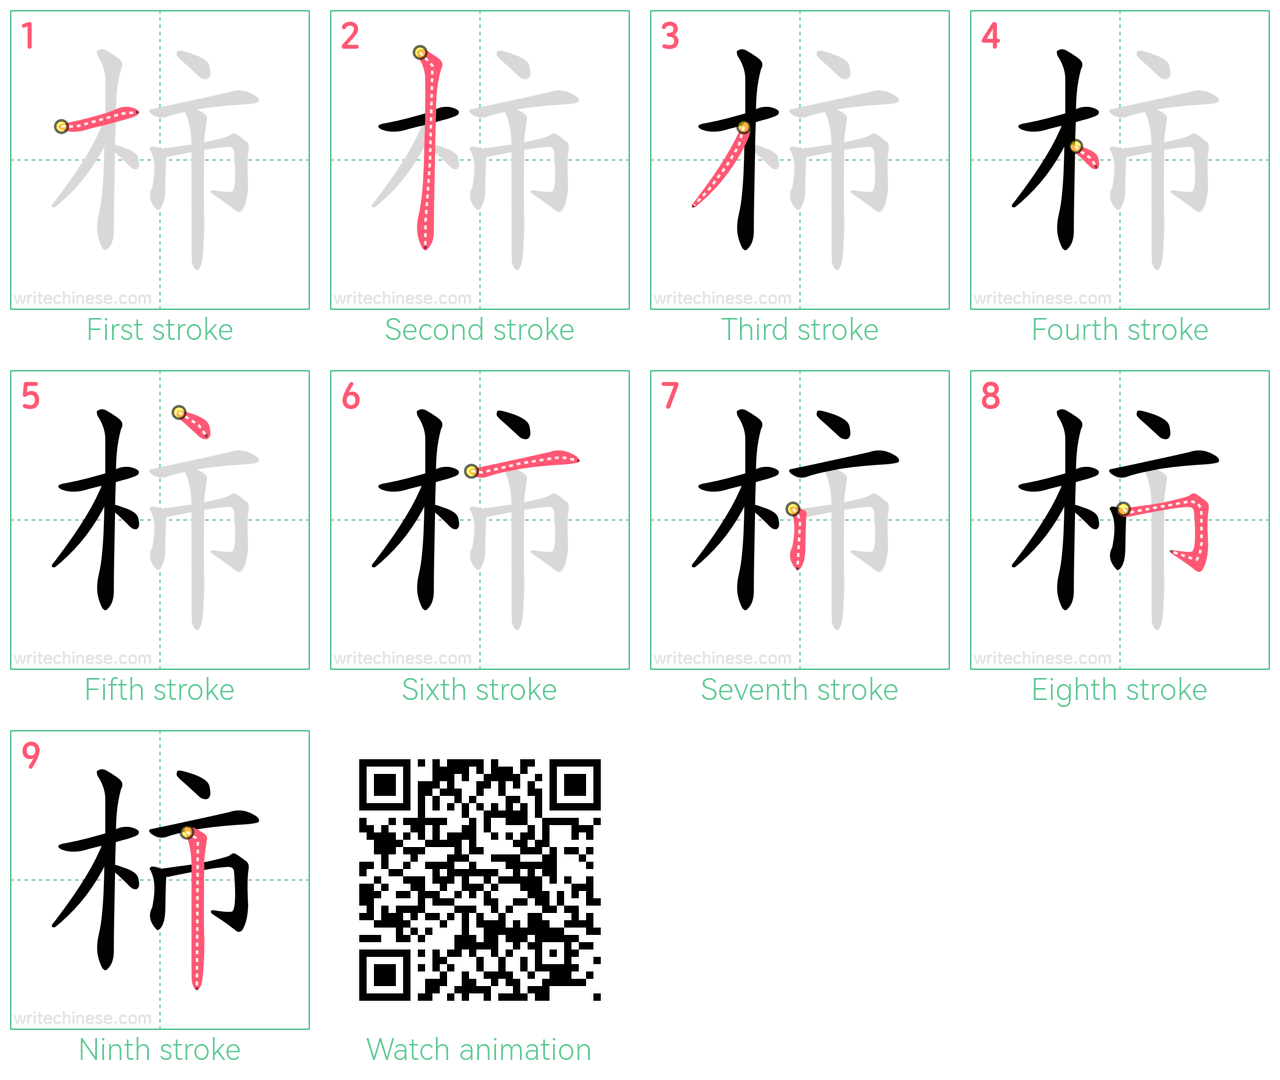 柿 step-by-step stroke order diagrams